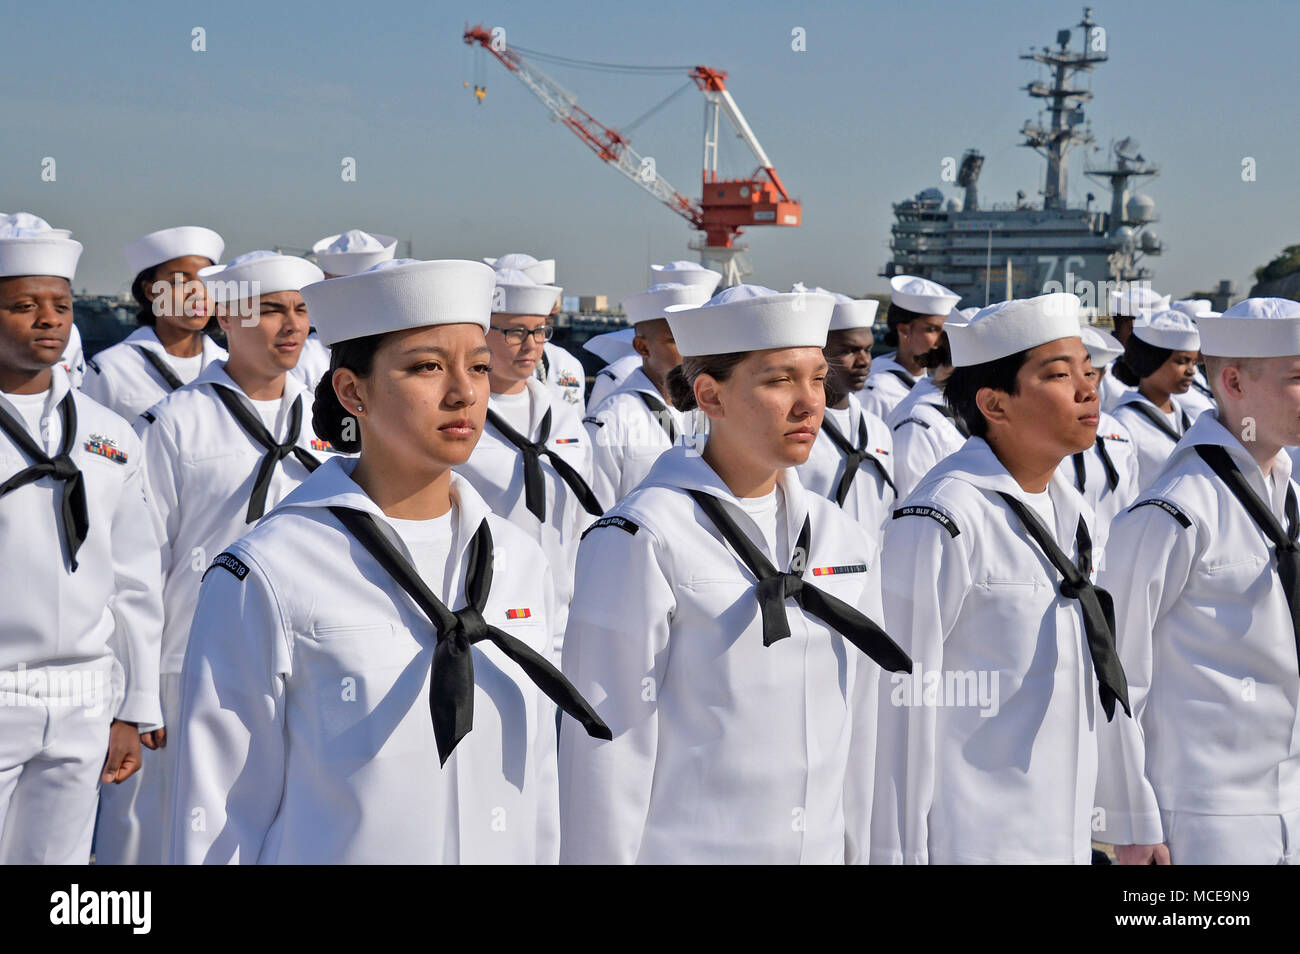 navy summer uniform shift dates 2018